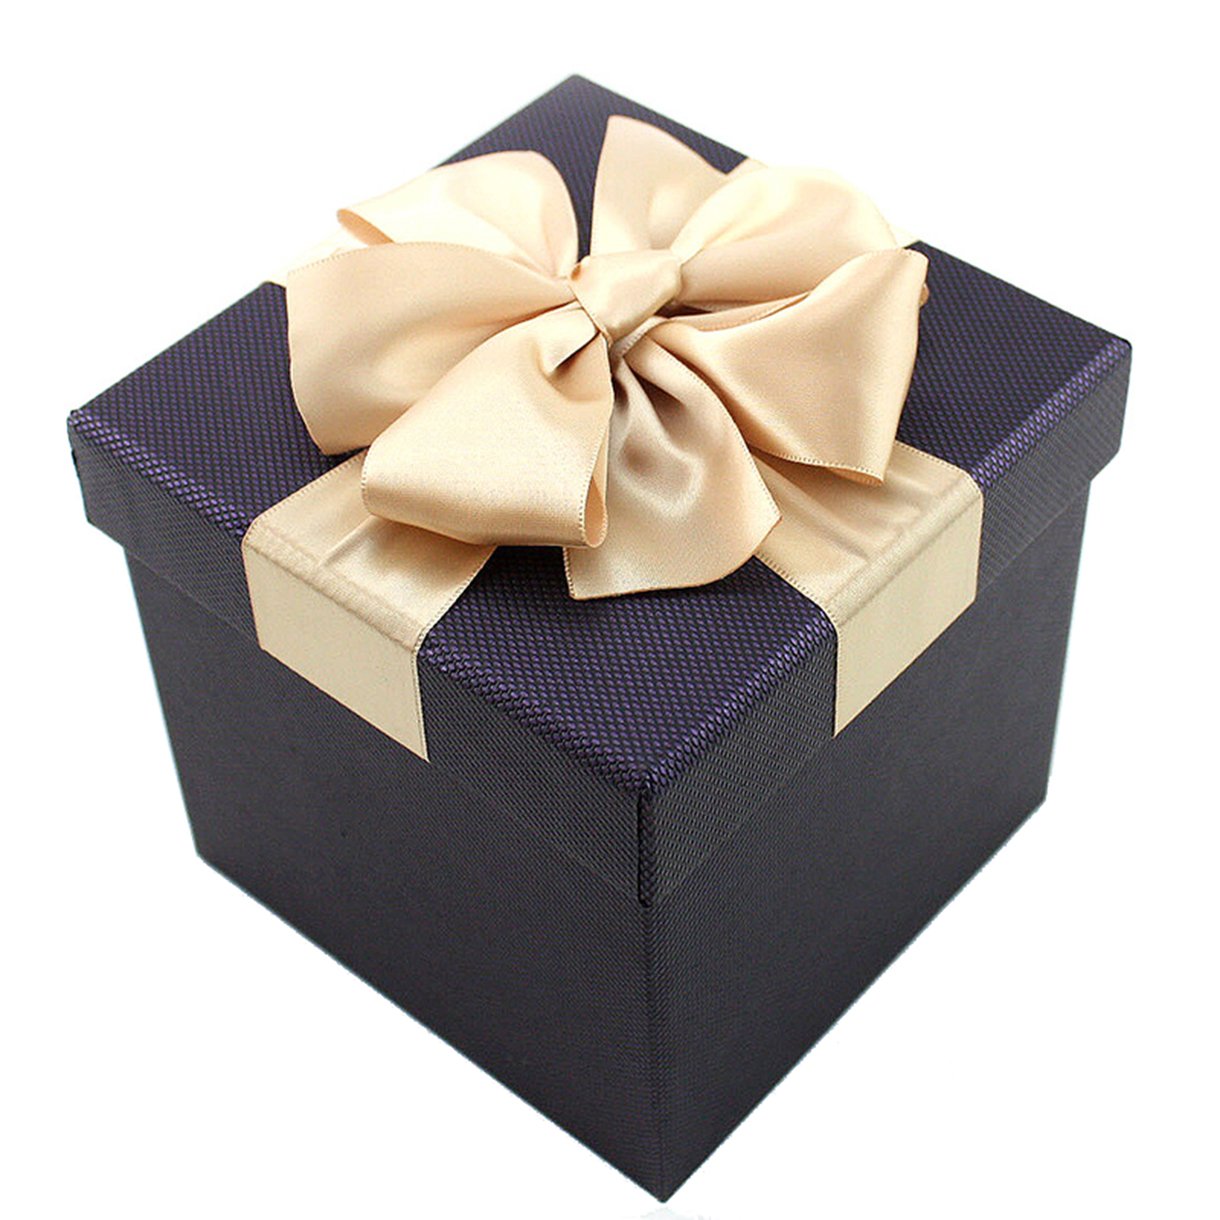 Cheerlife Quadratische Geschenkbox Geschenkkarton Geschenkschachteln Geschenkverpackung Geschenk Schachtel Karton Blau 20 * 20 * 20